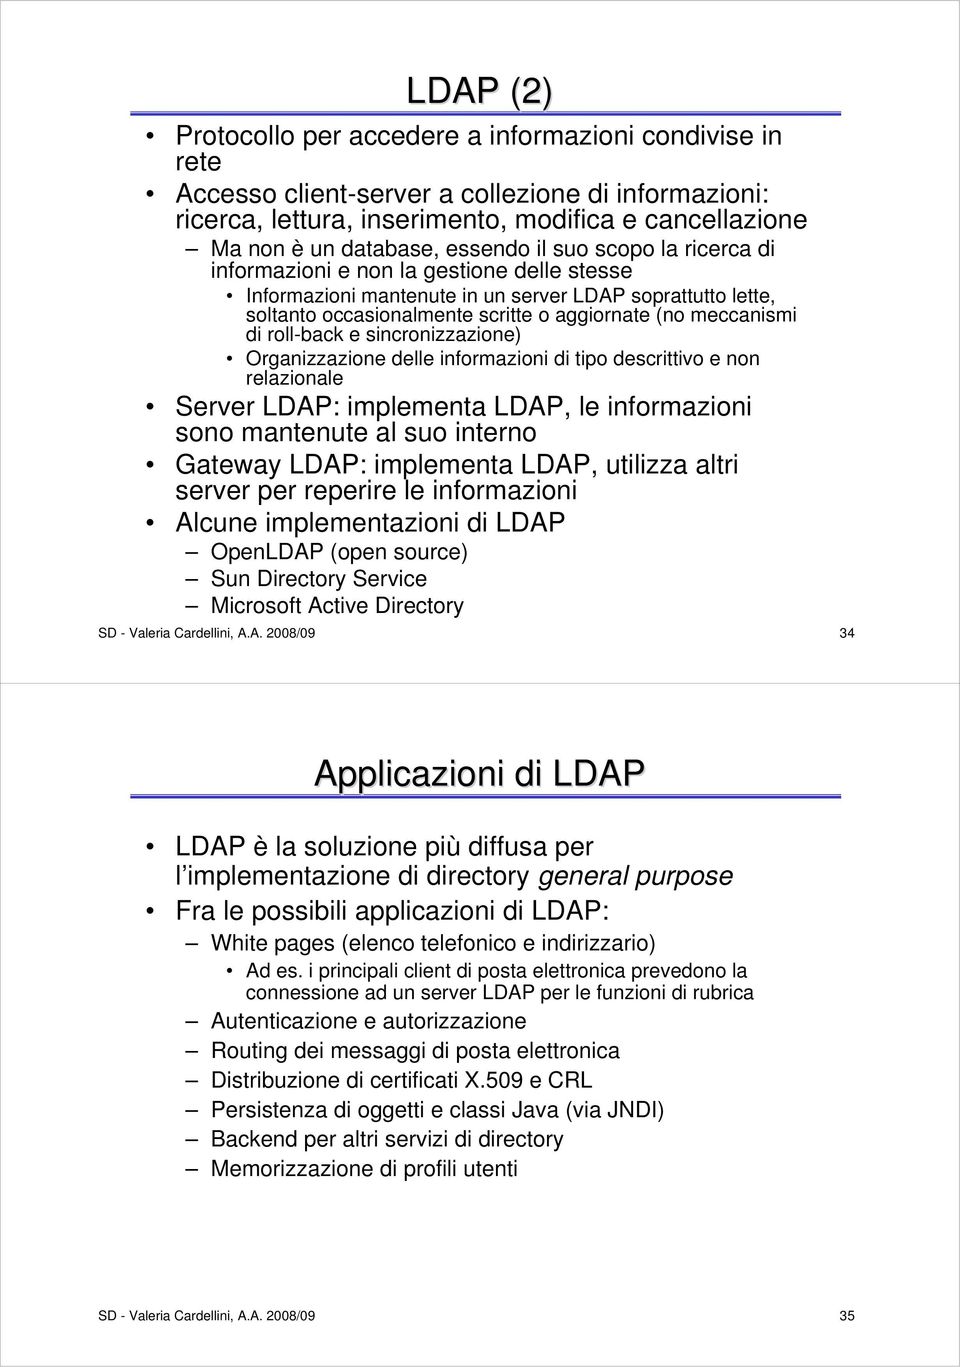 di roll-back e sincronizzazione) Organizzazione delle informazioni di tipo descrittivo e non relazionale Server LDAP: implementa LDAP, le informazioni sono mantenute al suo interno Gateway LDAP: